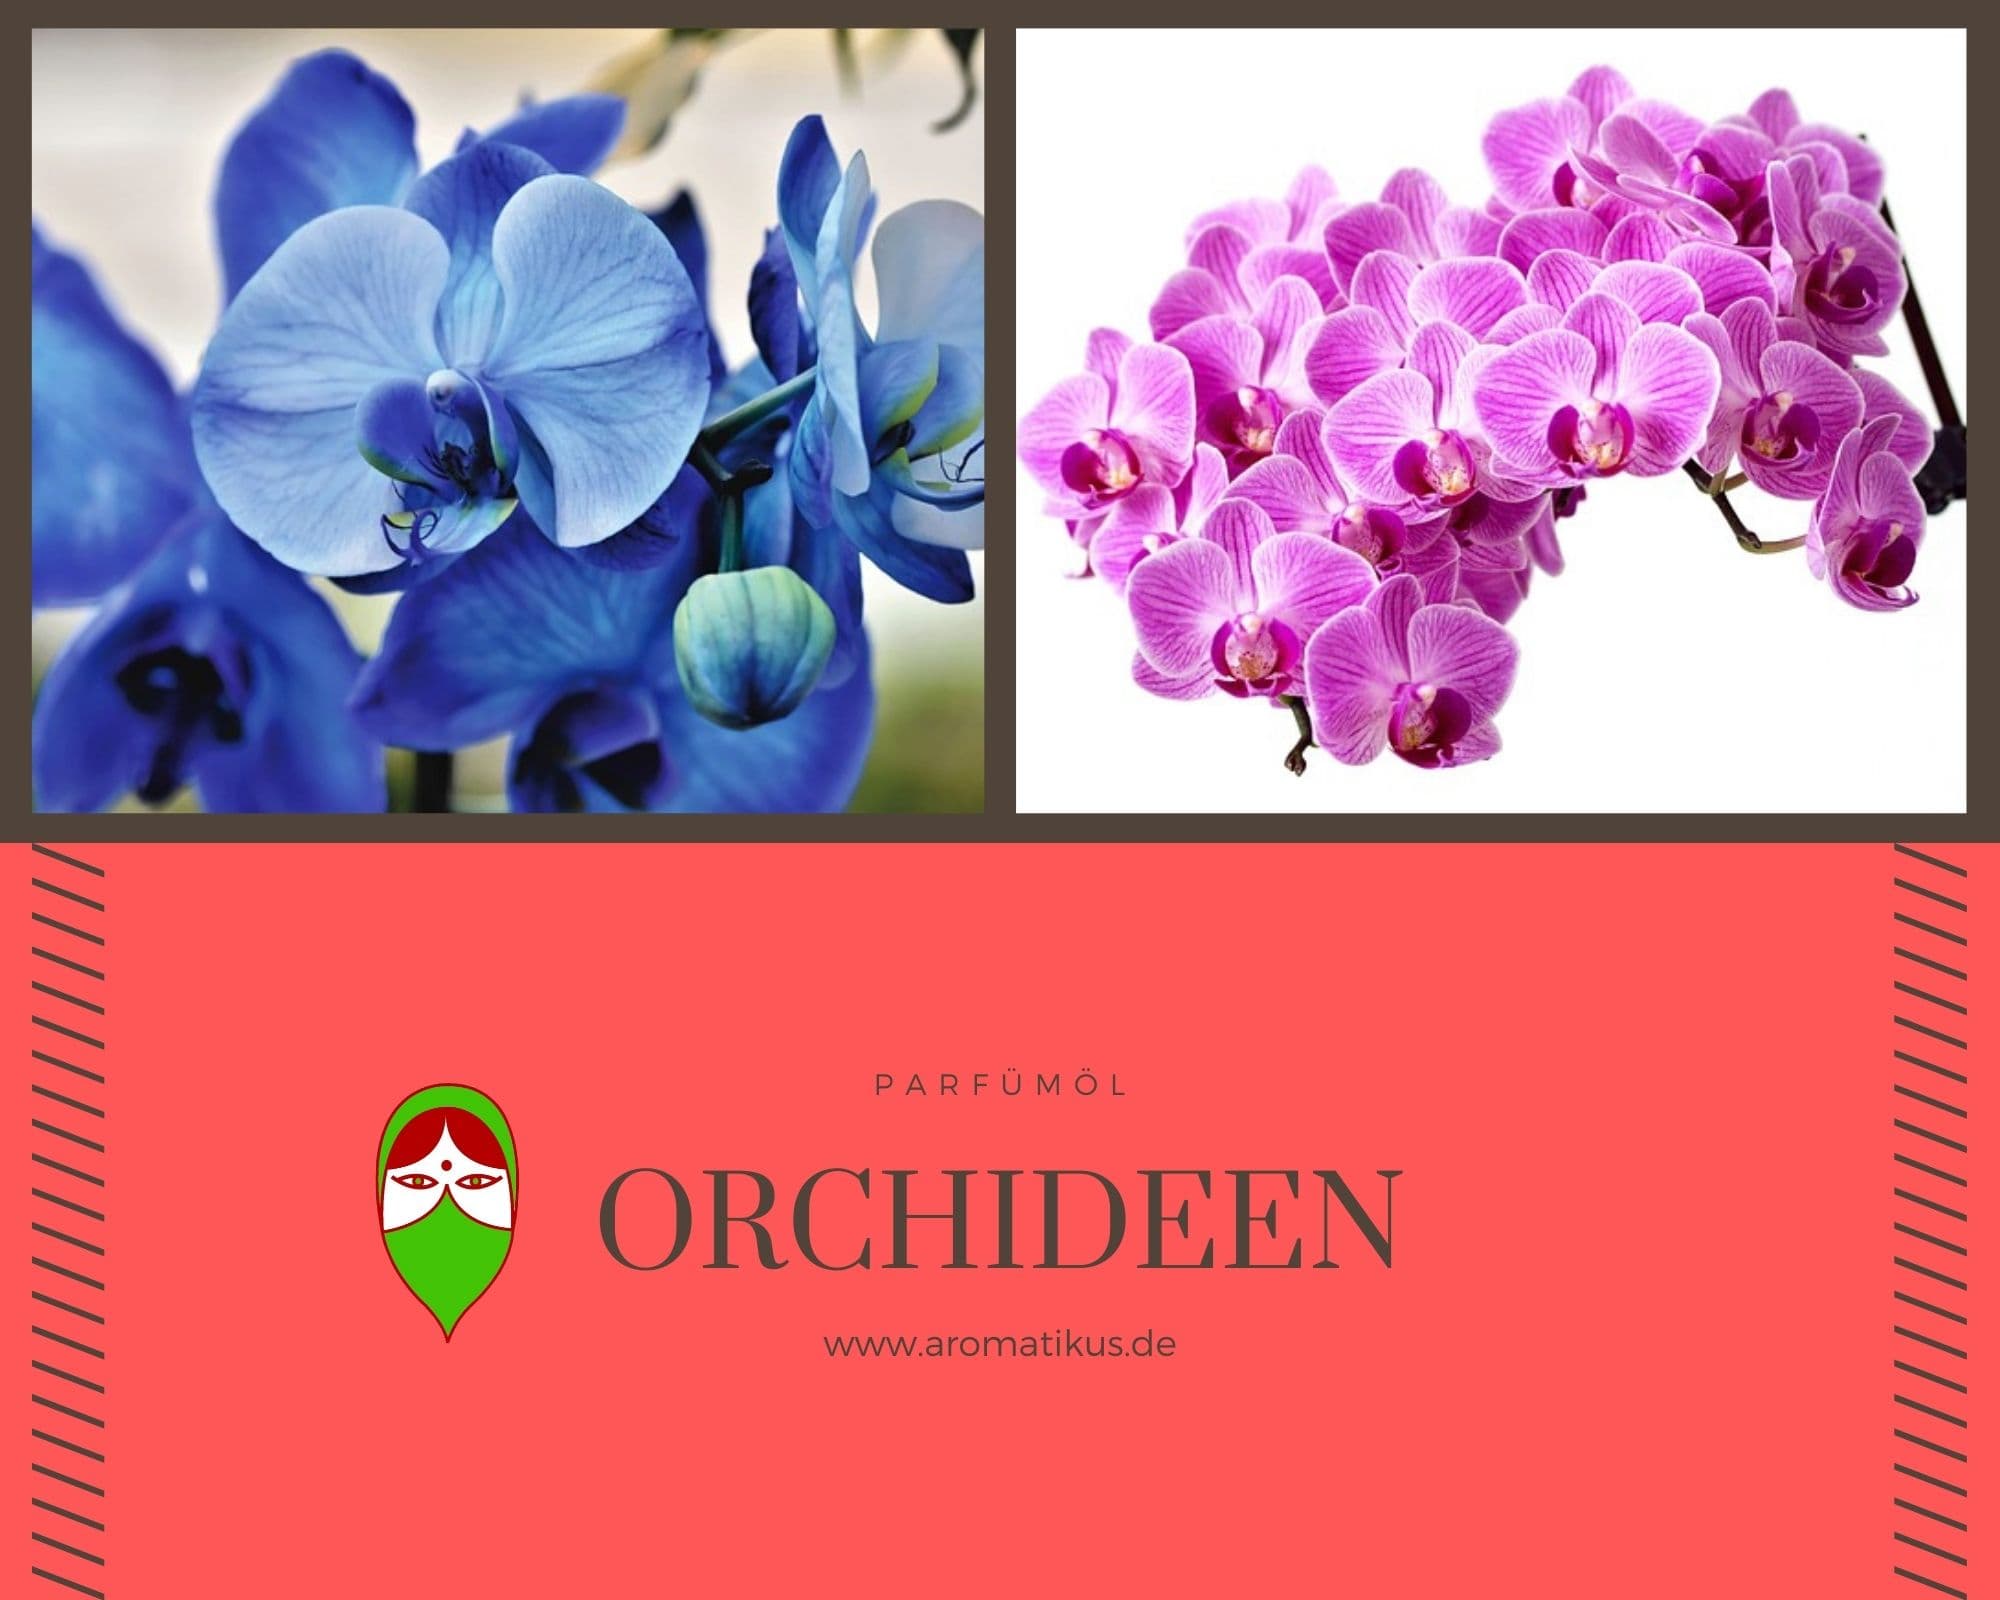 Ätherisches Duftöl Orchidee als Parfümöl von Aromatikus